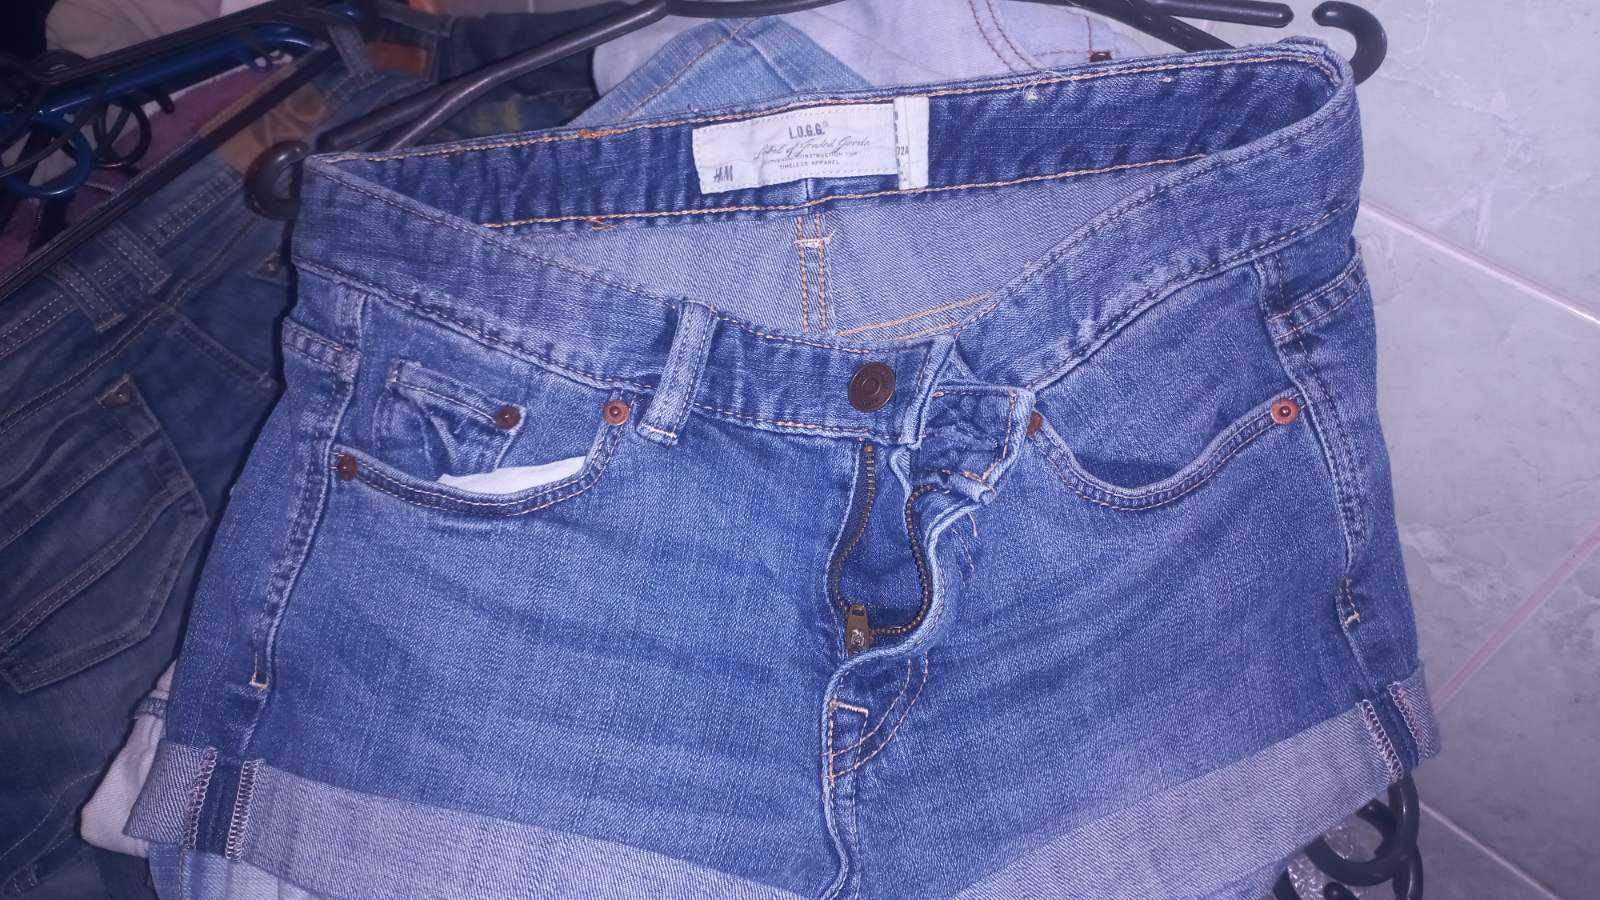 Жіночі джинсові шорти Польша, СЕКОНД ХЕНД ОПТ, від 10 кг